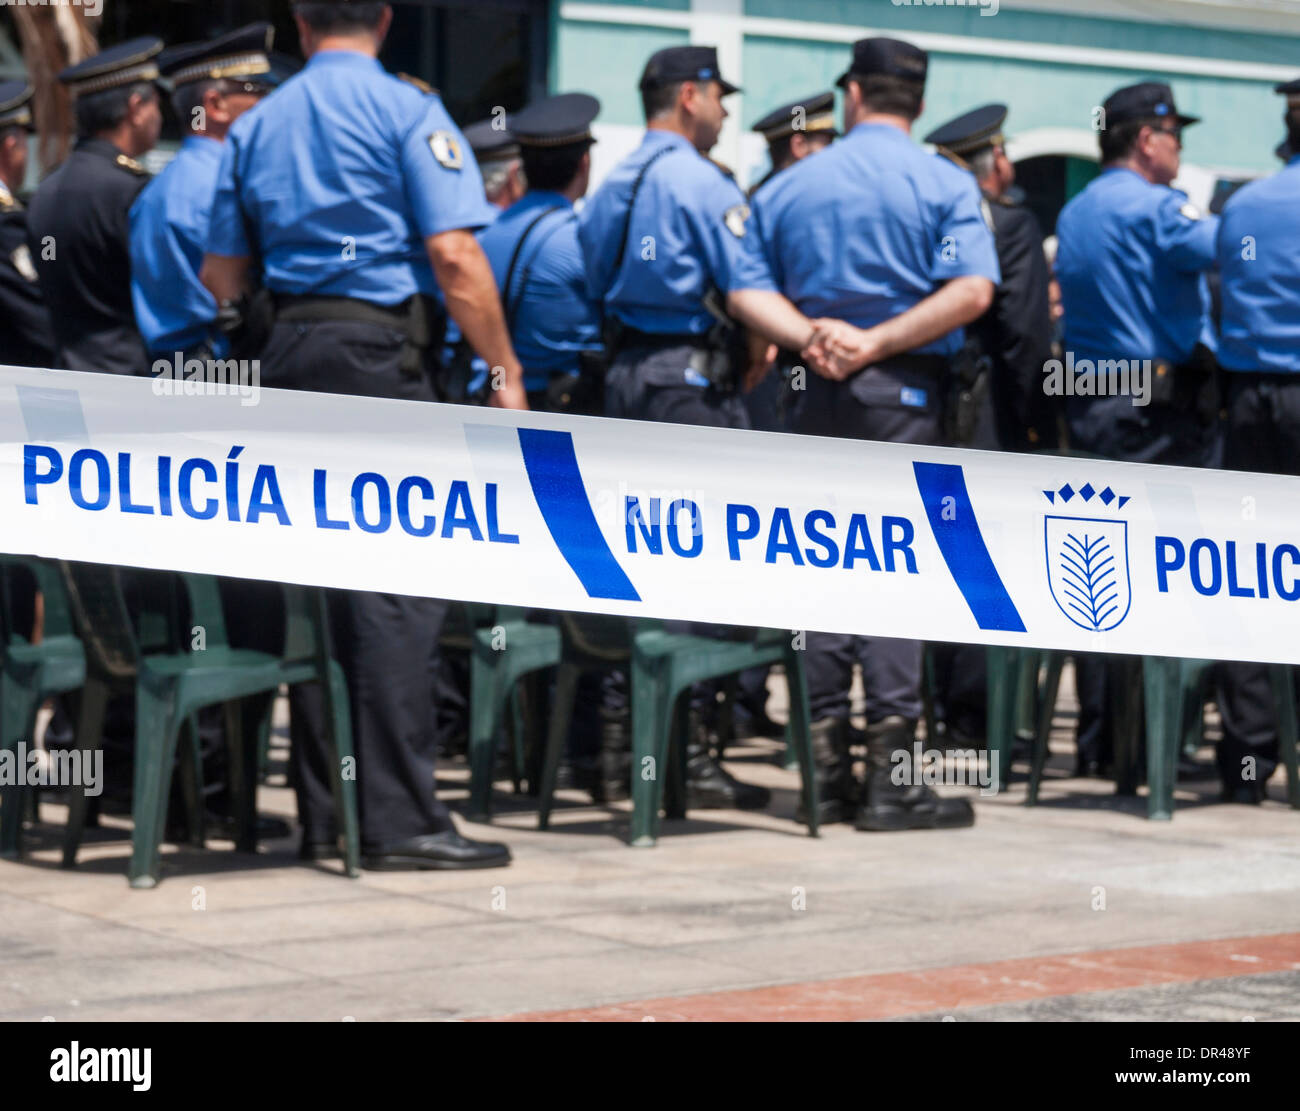 Non cross/pass polizia nastro incidente in spagnolo Foto Stock